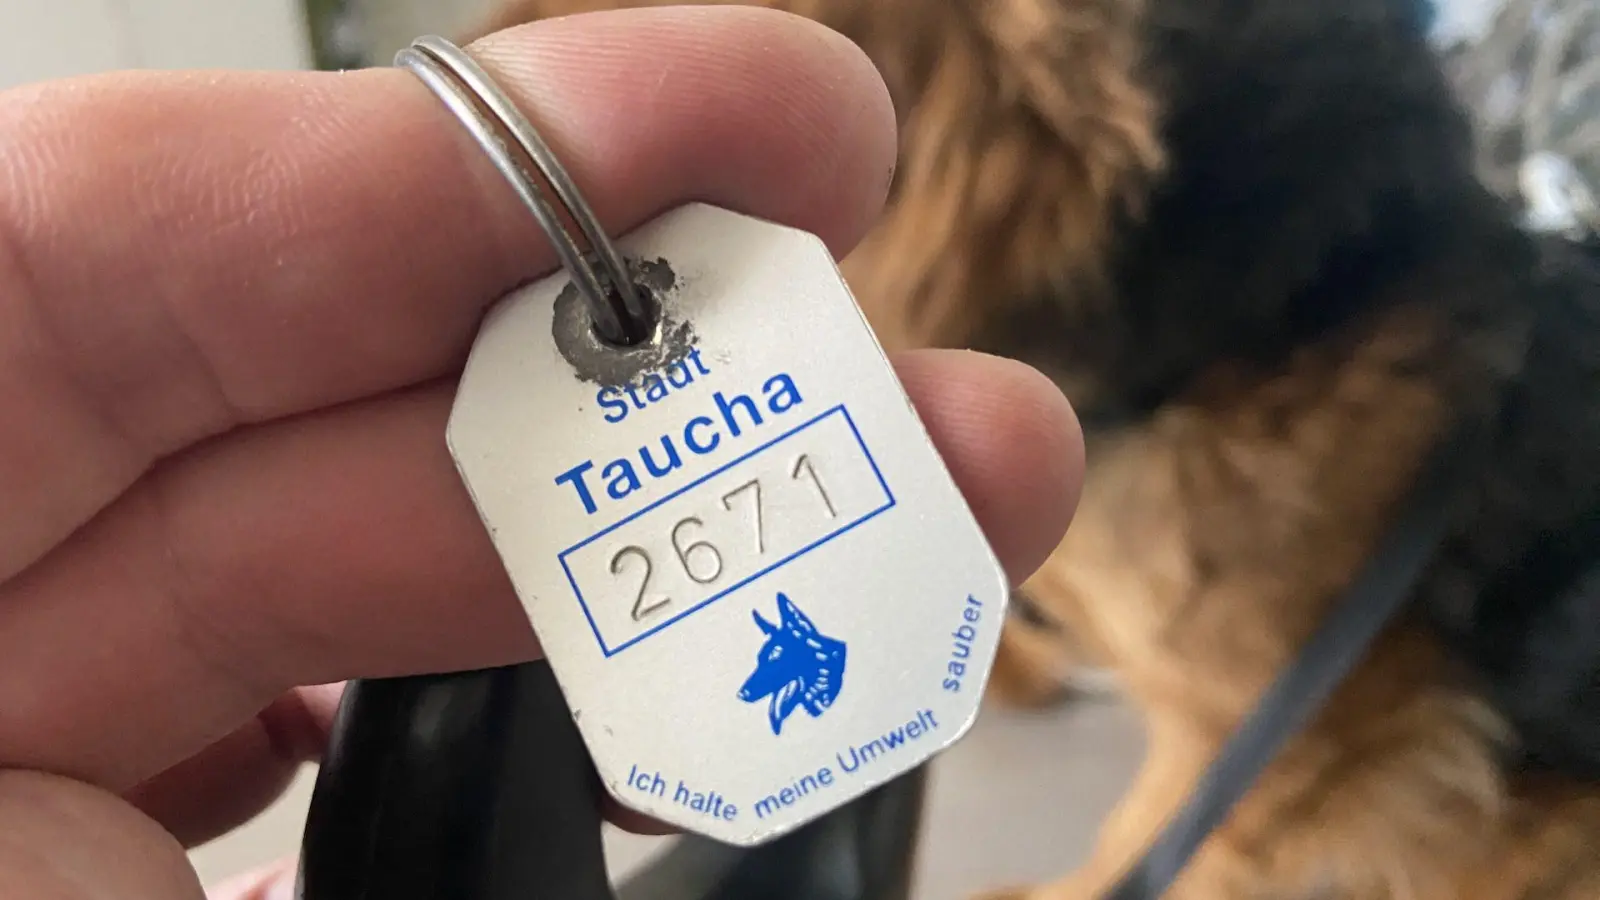 Auch diese Hundesteuermarke muss umgetauscht werden. (Foto: taucha-kompakt.de)